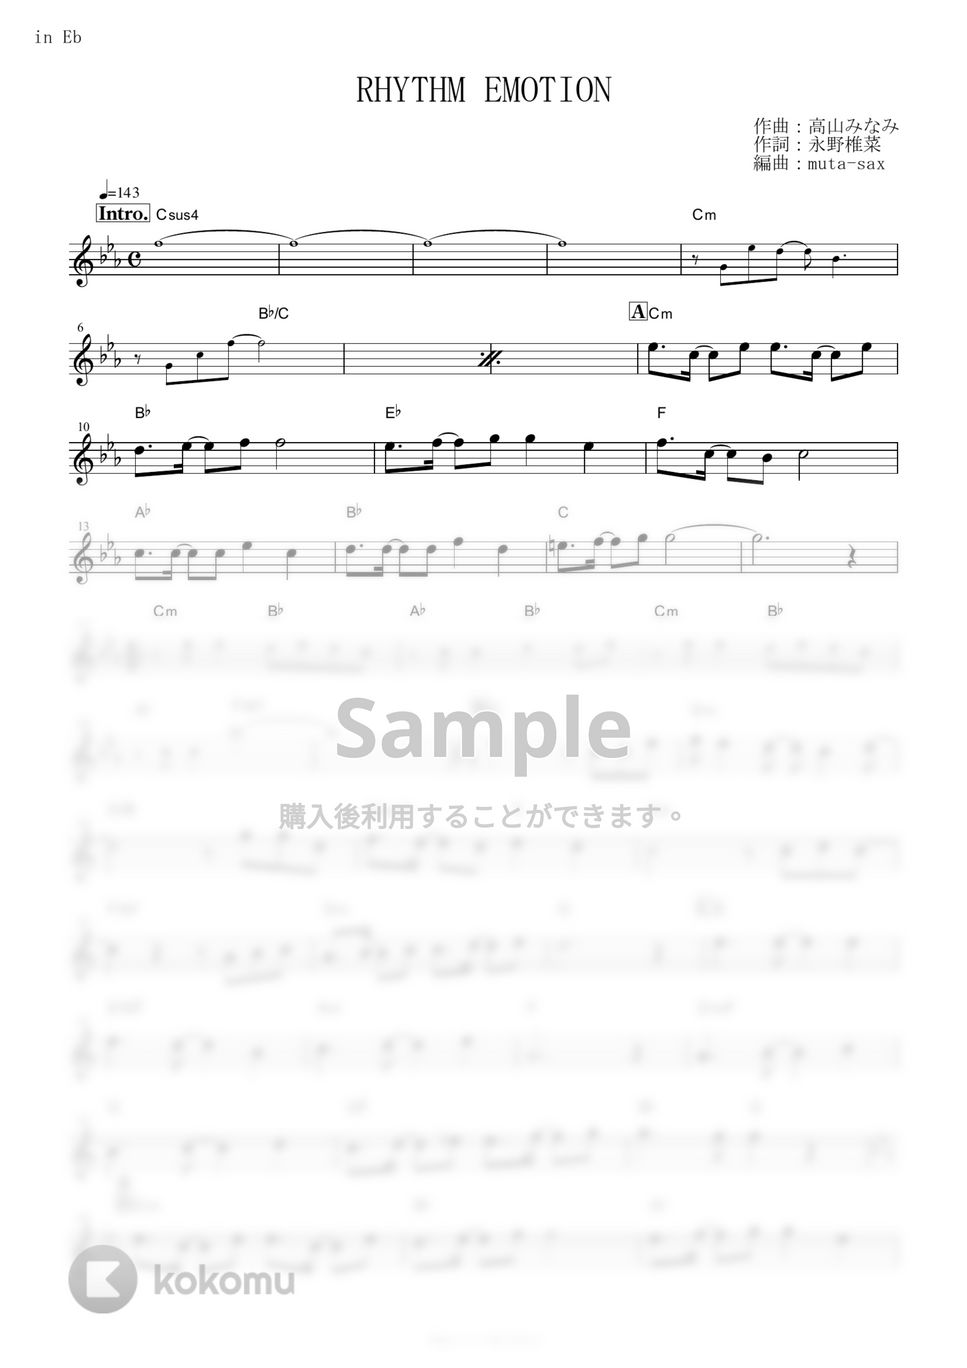 TWO-MIX - RHYTHM EMOTION (『新機動戦記ガンダムW』 / in Eb) by muta-sax